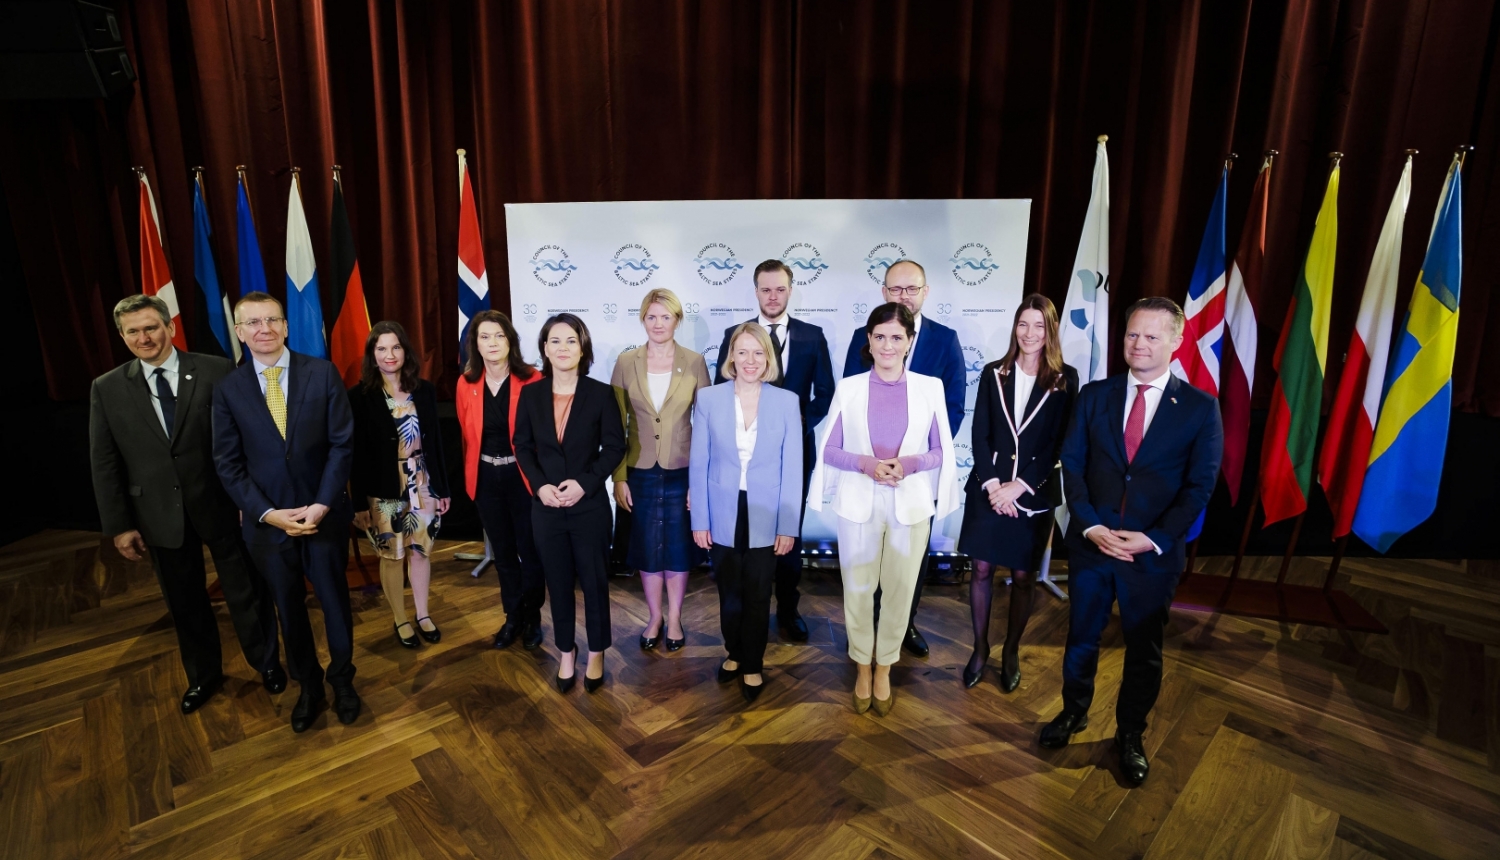 Ārlietu ministrs: jaunā situācija Baltijas jūras reģionā sniedz iespējas sadarbības uzlabošanai